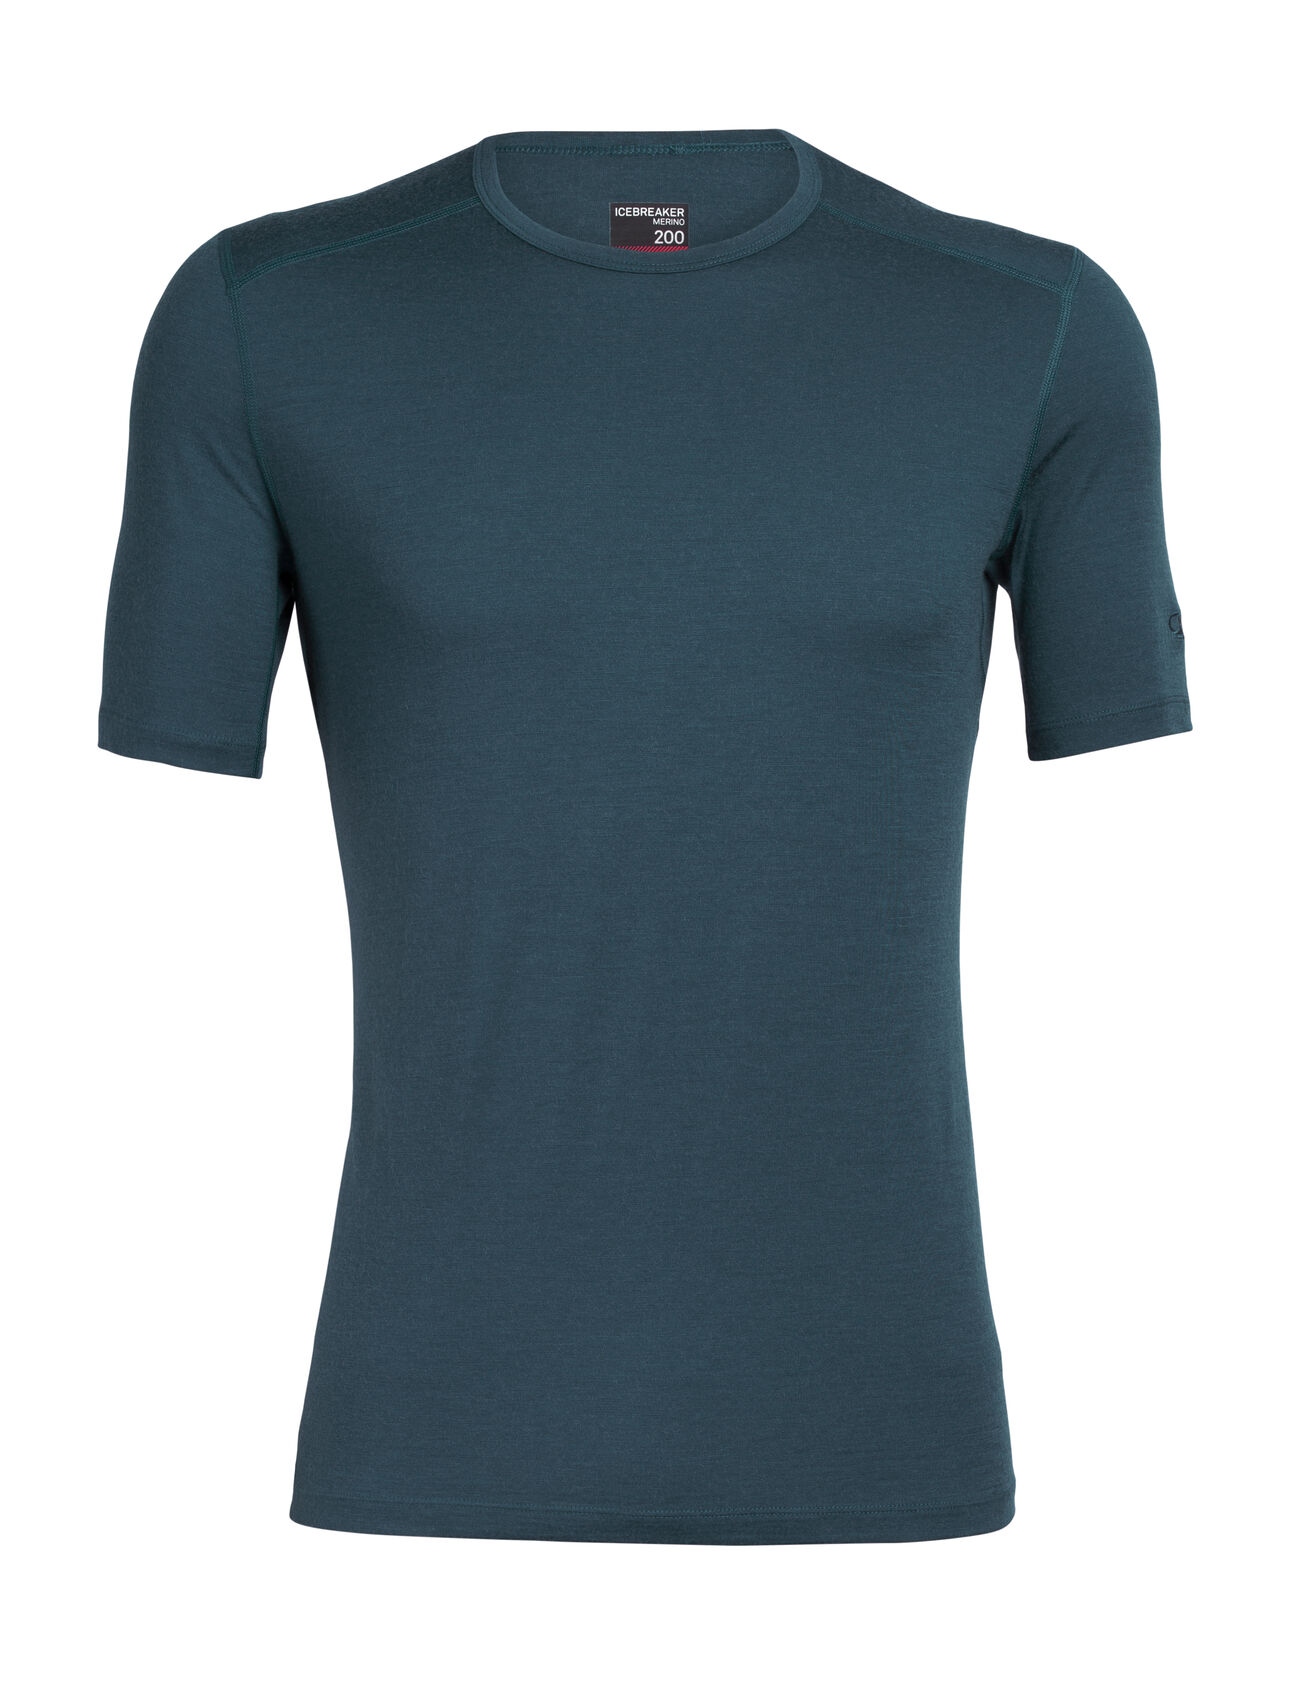 Pánské termo tričko s krátkým rukávem Merino 200 Oasis Crewe